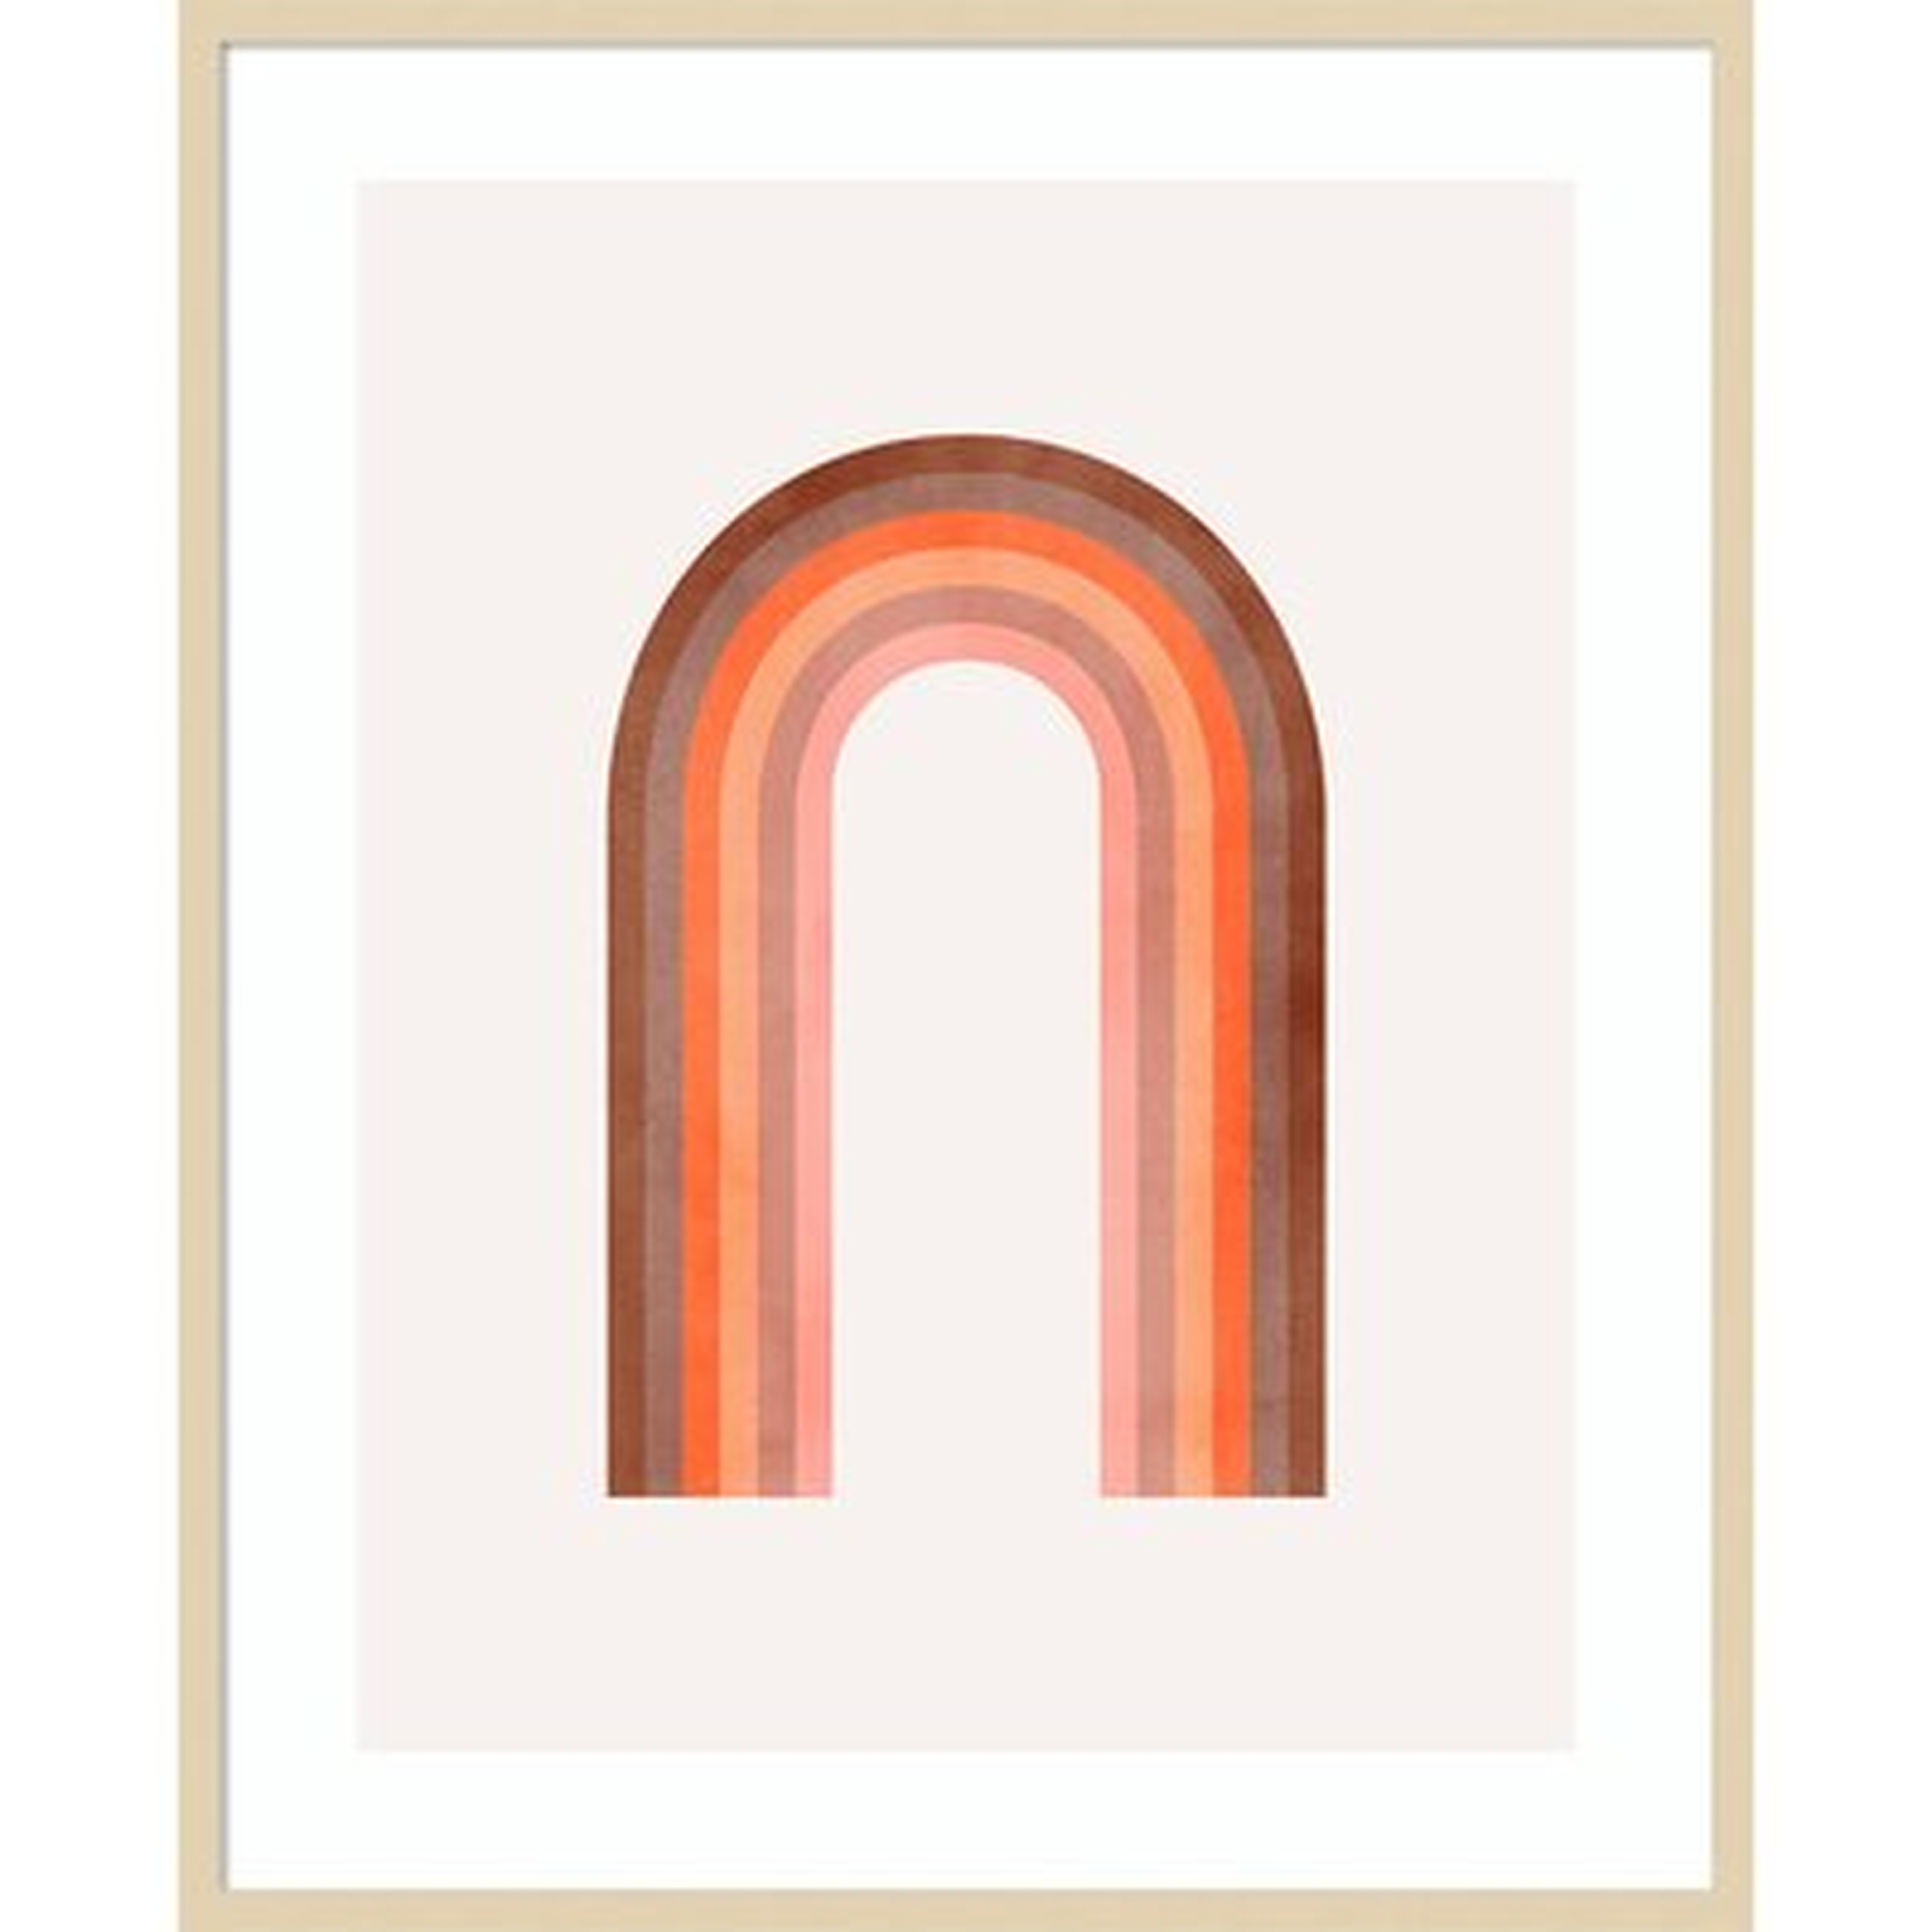 Alex Ginzburg Surea 3 by Alex Ginzburg - Picture Frame Graphic Art Print on Paper - AllModern